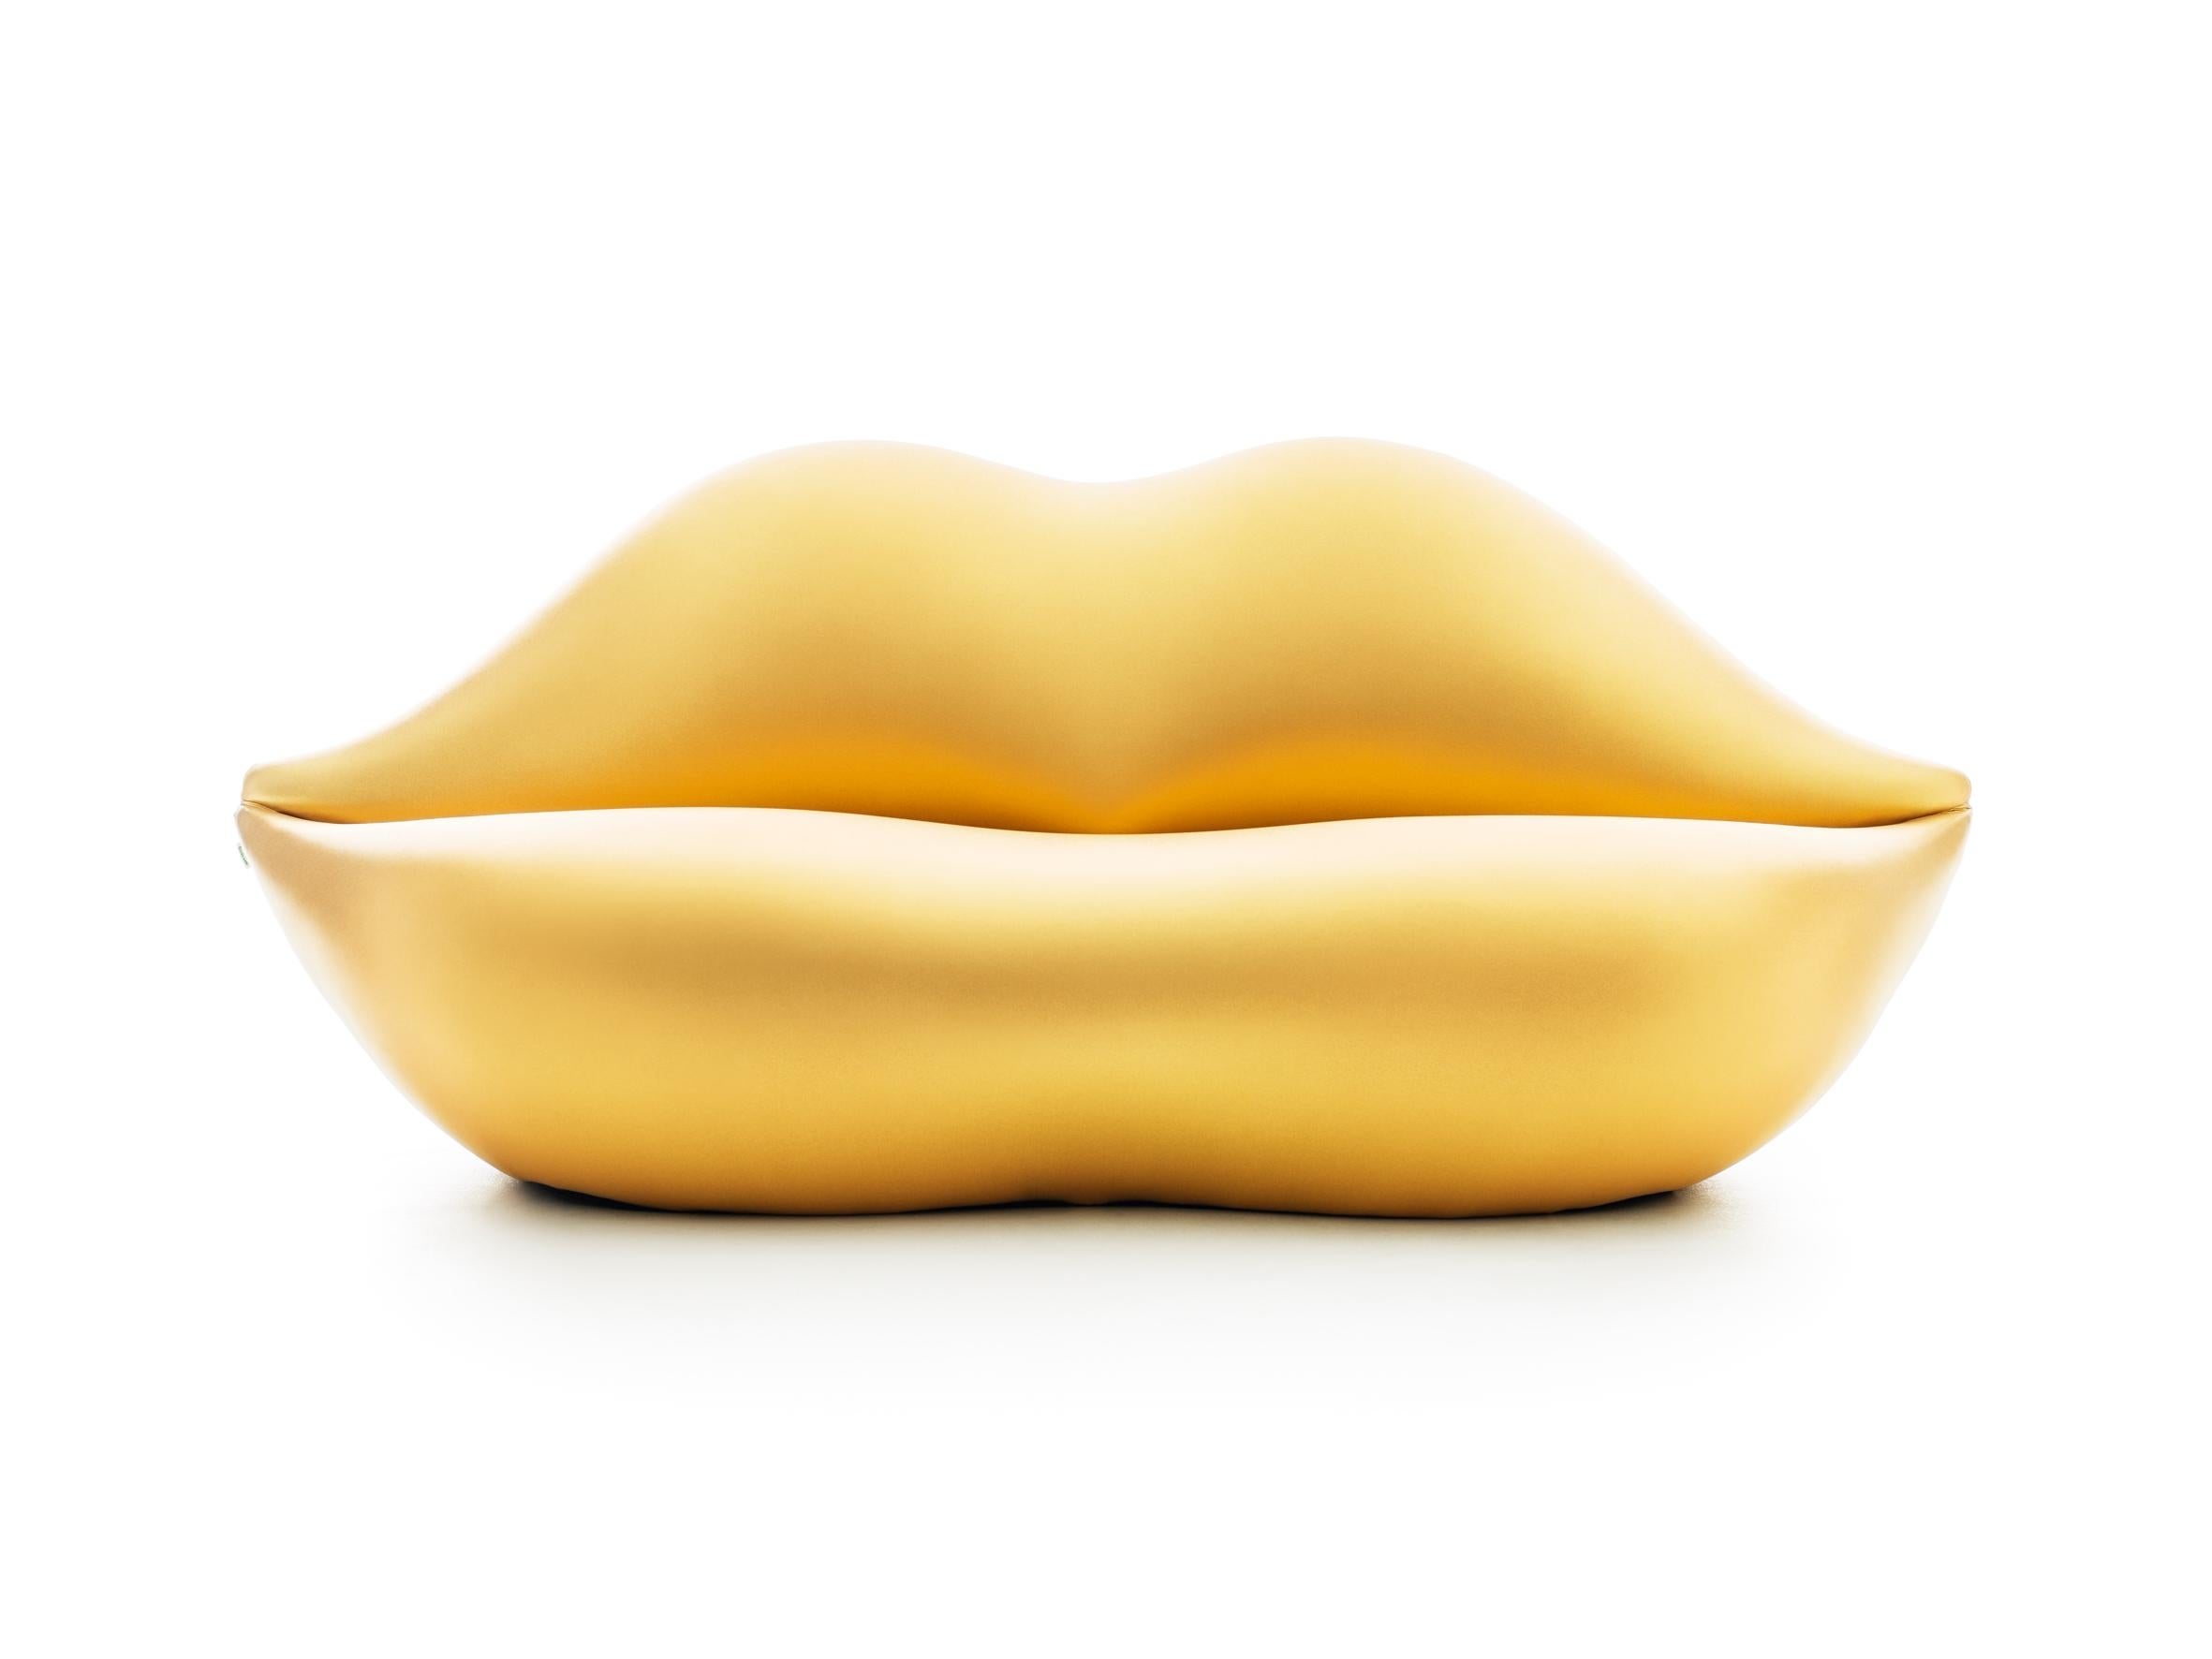 Bocca, le canapé original de 1970 en forme de lèvres est seulement celui de Gufram. Ce canapé sensuel, idéal pour un tête-à-tête, est entré dans l'imaginaire collectif au même titre que les œuvres d'Andy Warhol, ainsi que d'autres chefs-d'œuvre du